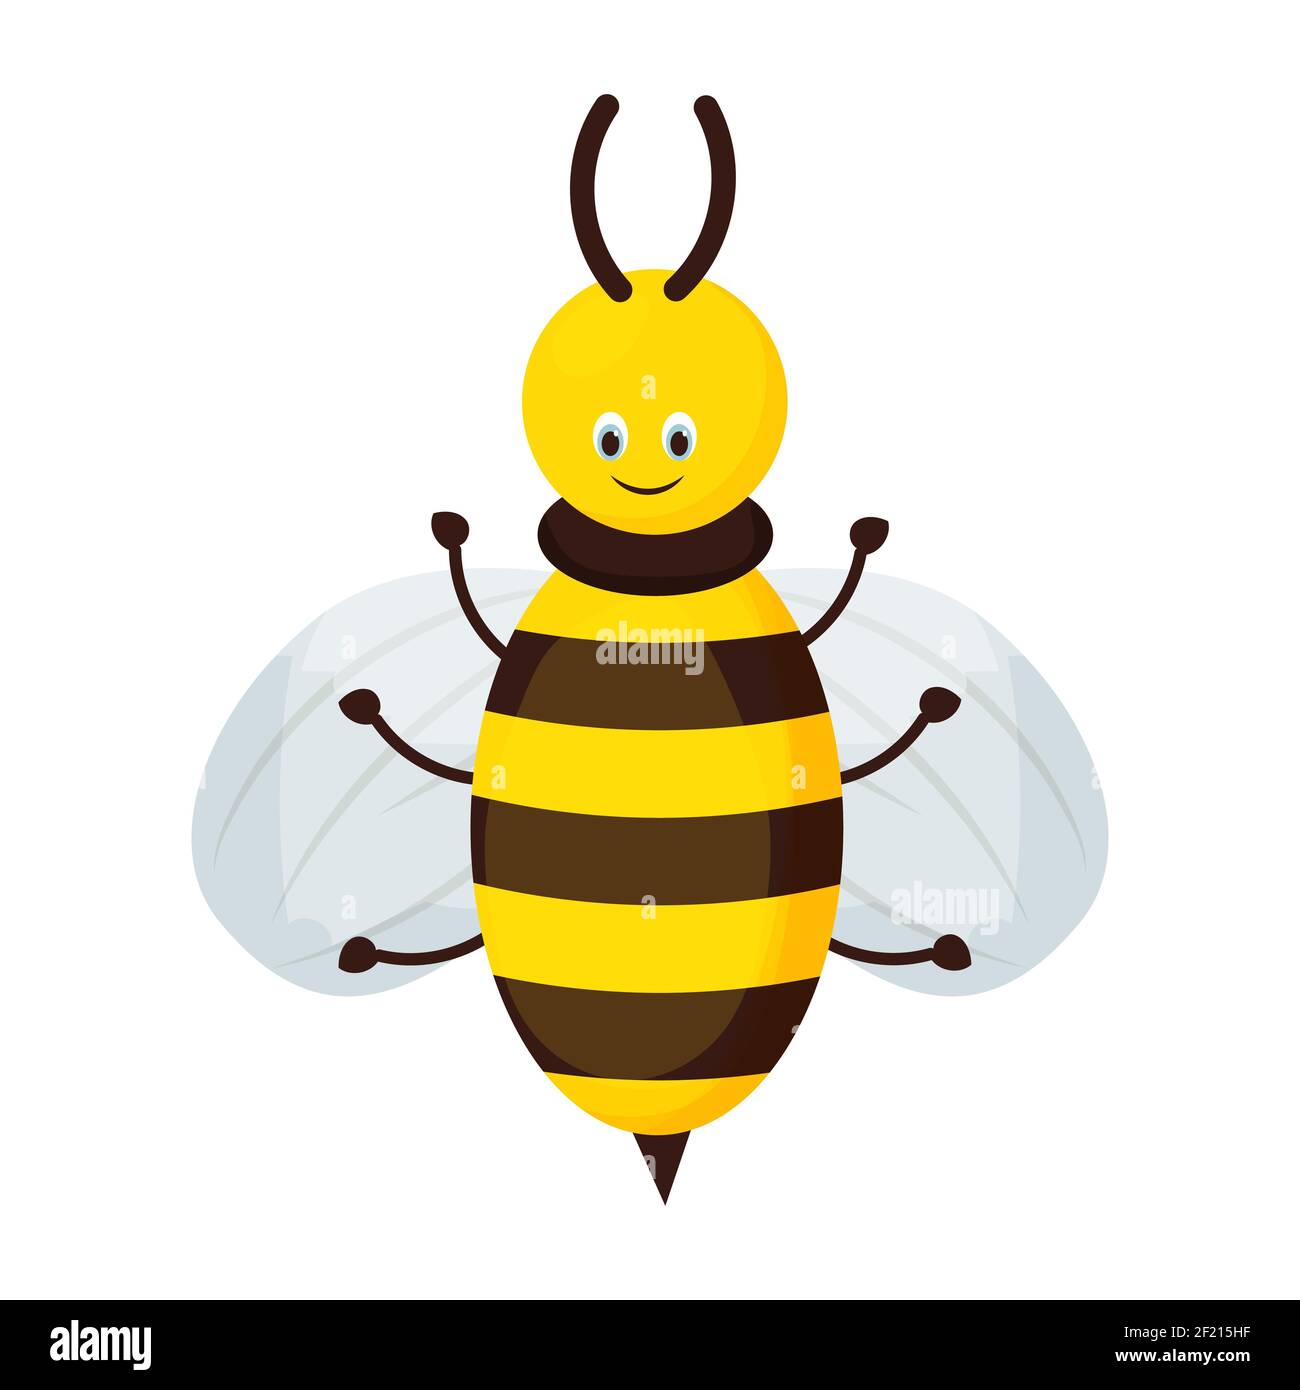 Niedlich, liebenswert Biene Charakter in Cartoon-Stil isoliert auf weißem Hintergrund. Lächelnde Honigbiene, Insekt. Kindliche Käfer mit Streifen. . Vektorgrafik Stock Vektor